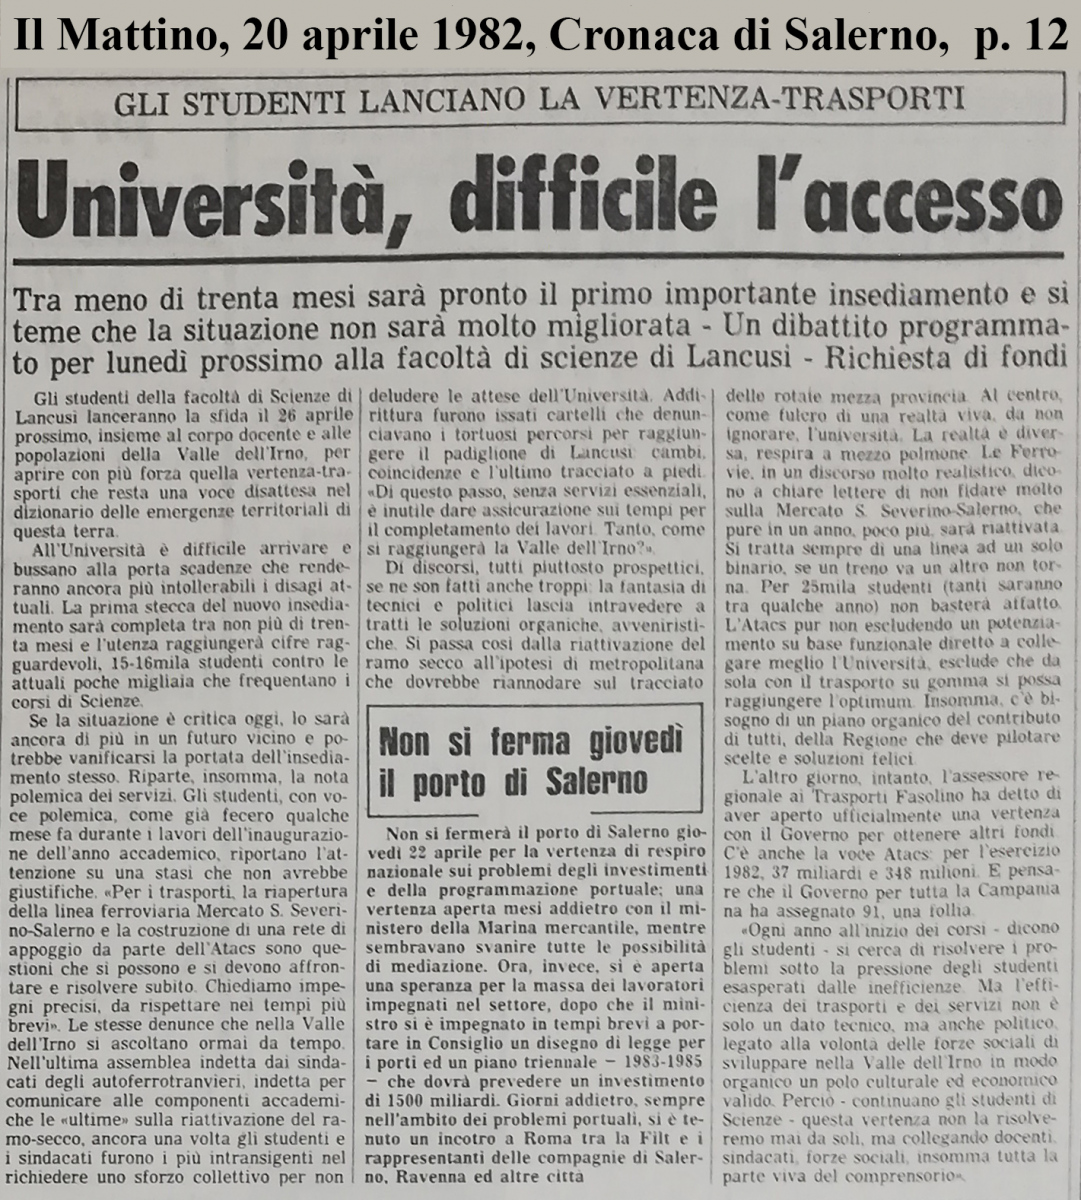 Il Mattino (20-04-1982)